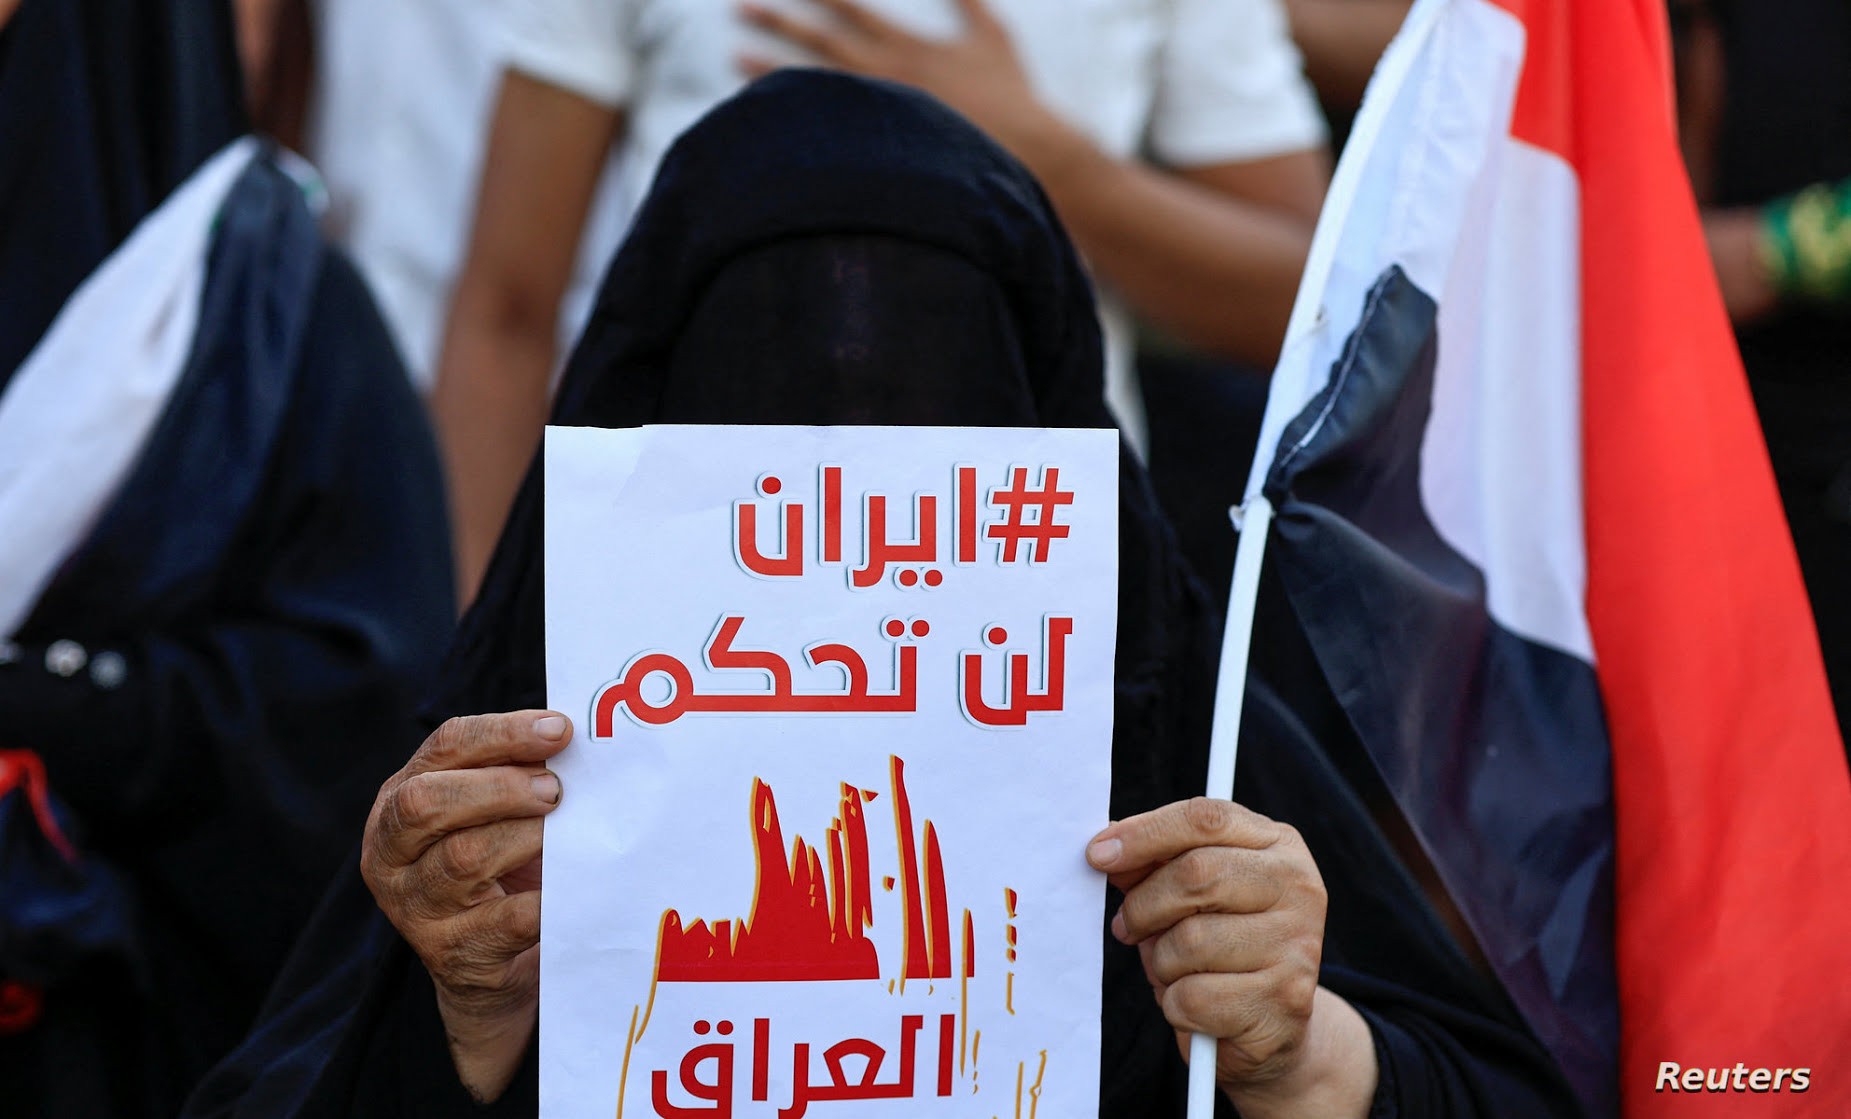 كشف نشطاء عراقيون عن نيتهم بدء احتجاجات جديدة في بغداد ومدن عدة من البلاد مطلع شهر أكتوبر/ تشرين الأول المقبل بالتزامن مع الذكرى الثالثة لانطلاق "انتفاضة تشرين"